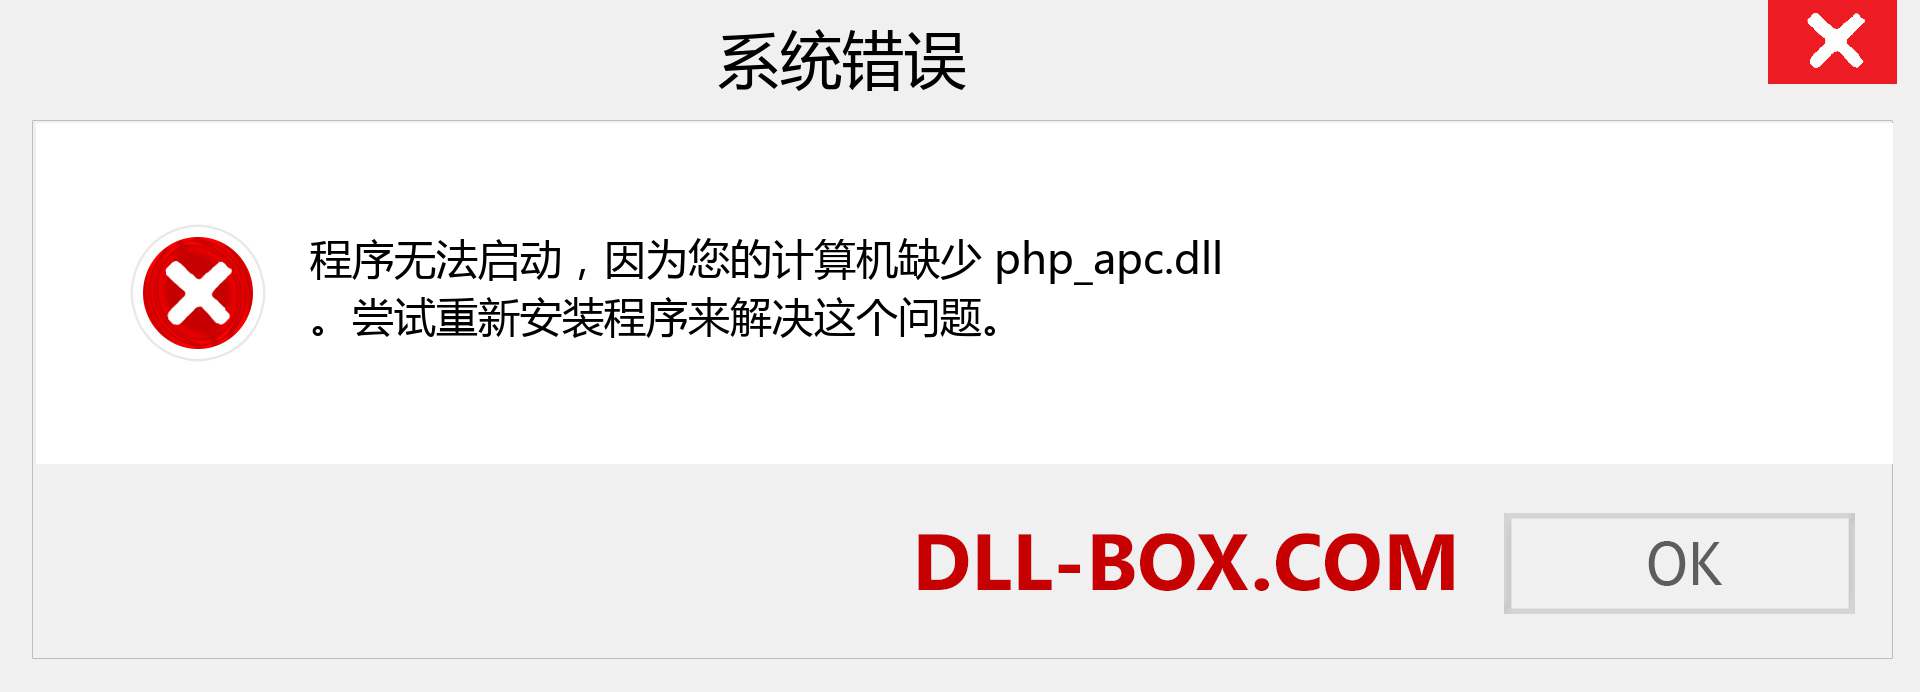 php_apc.dll 文件丢失？。 适用于 Windows 7、8、10 的下载 - 修复 Windows、照片、图像上的 php_apc dll 丢失错误